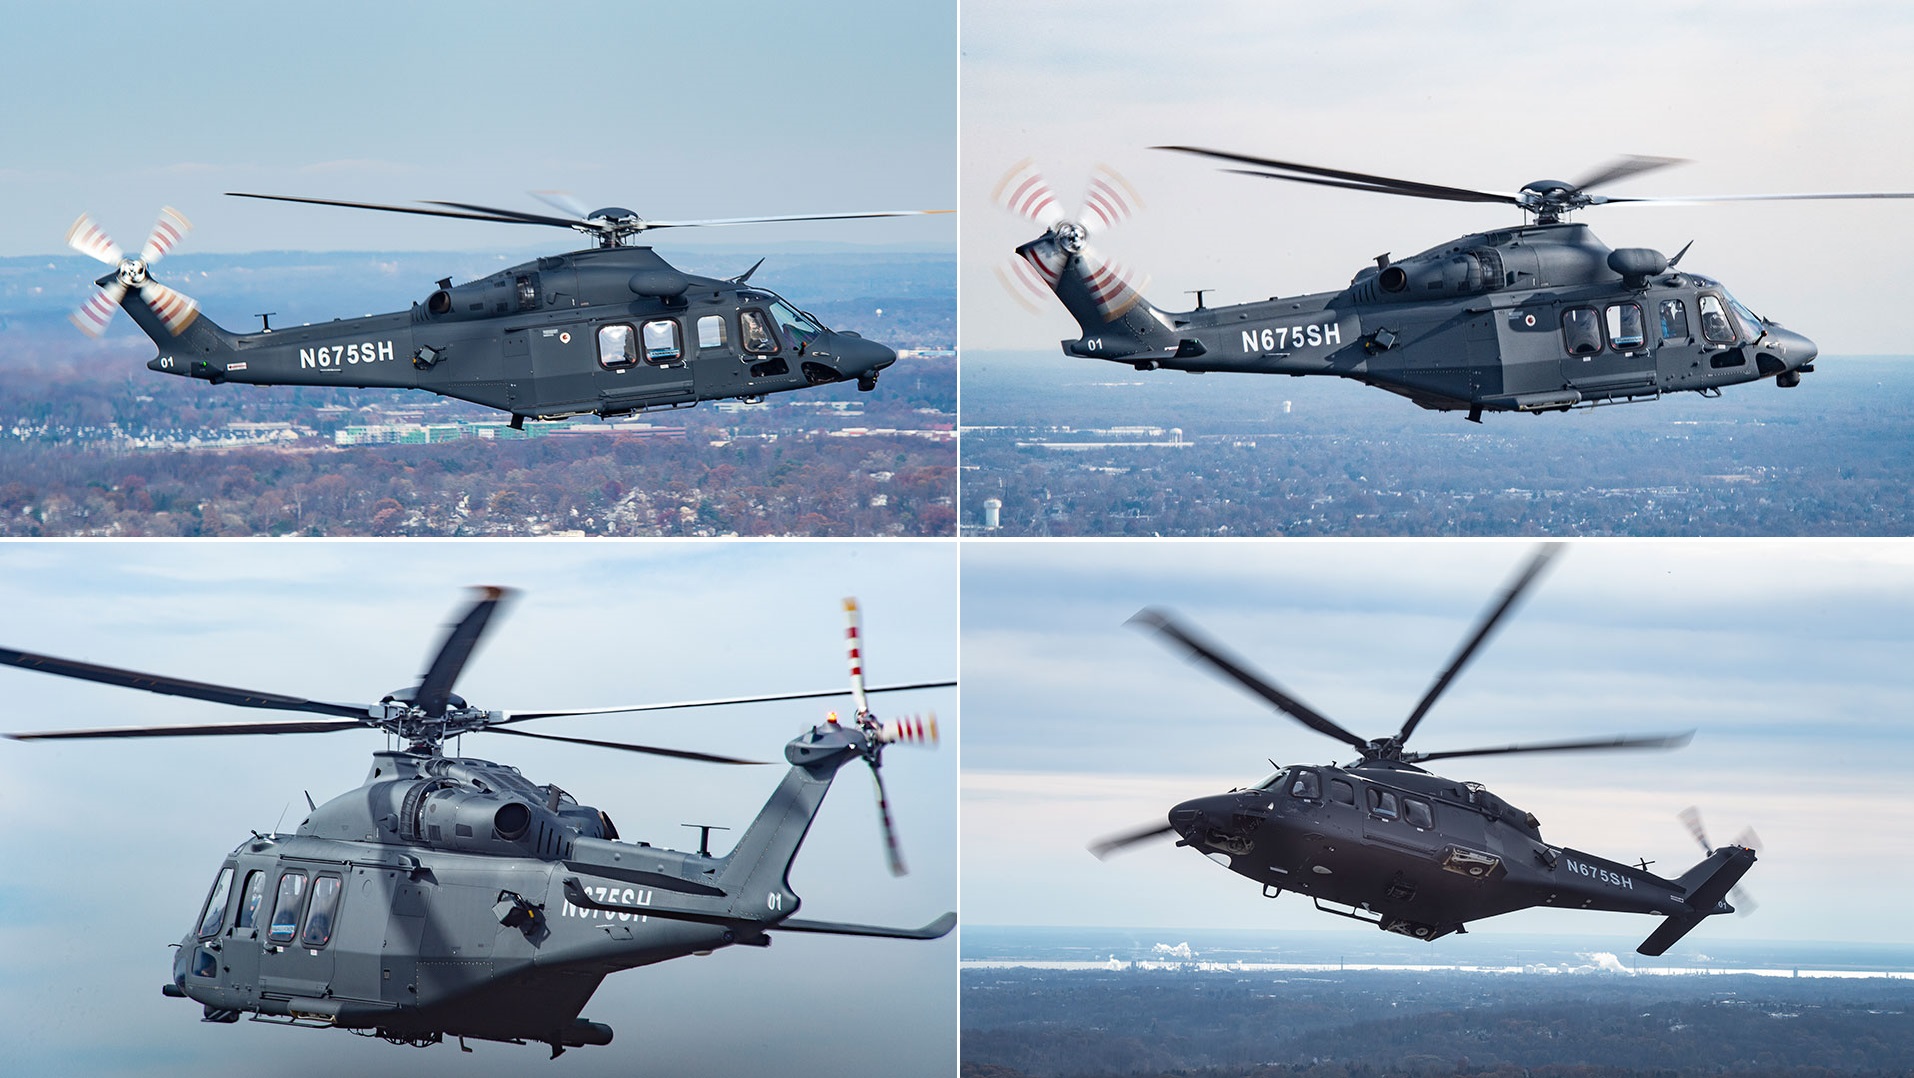 Leonardo et Boeing livrent pour la première fois des hélicoptères d'essai MH-139A Grey Wolf à l'US Air Force dans le cadre d'un contrat de 2,4 milliards de dollars.